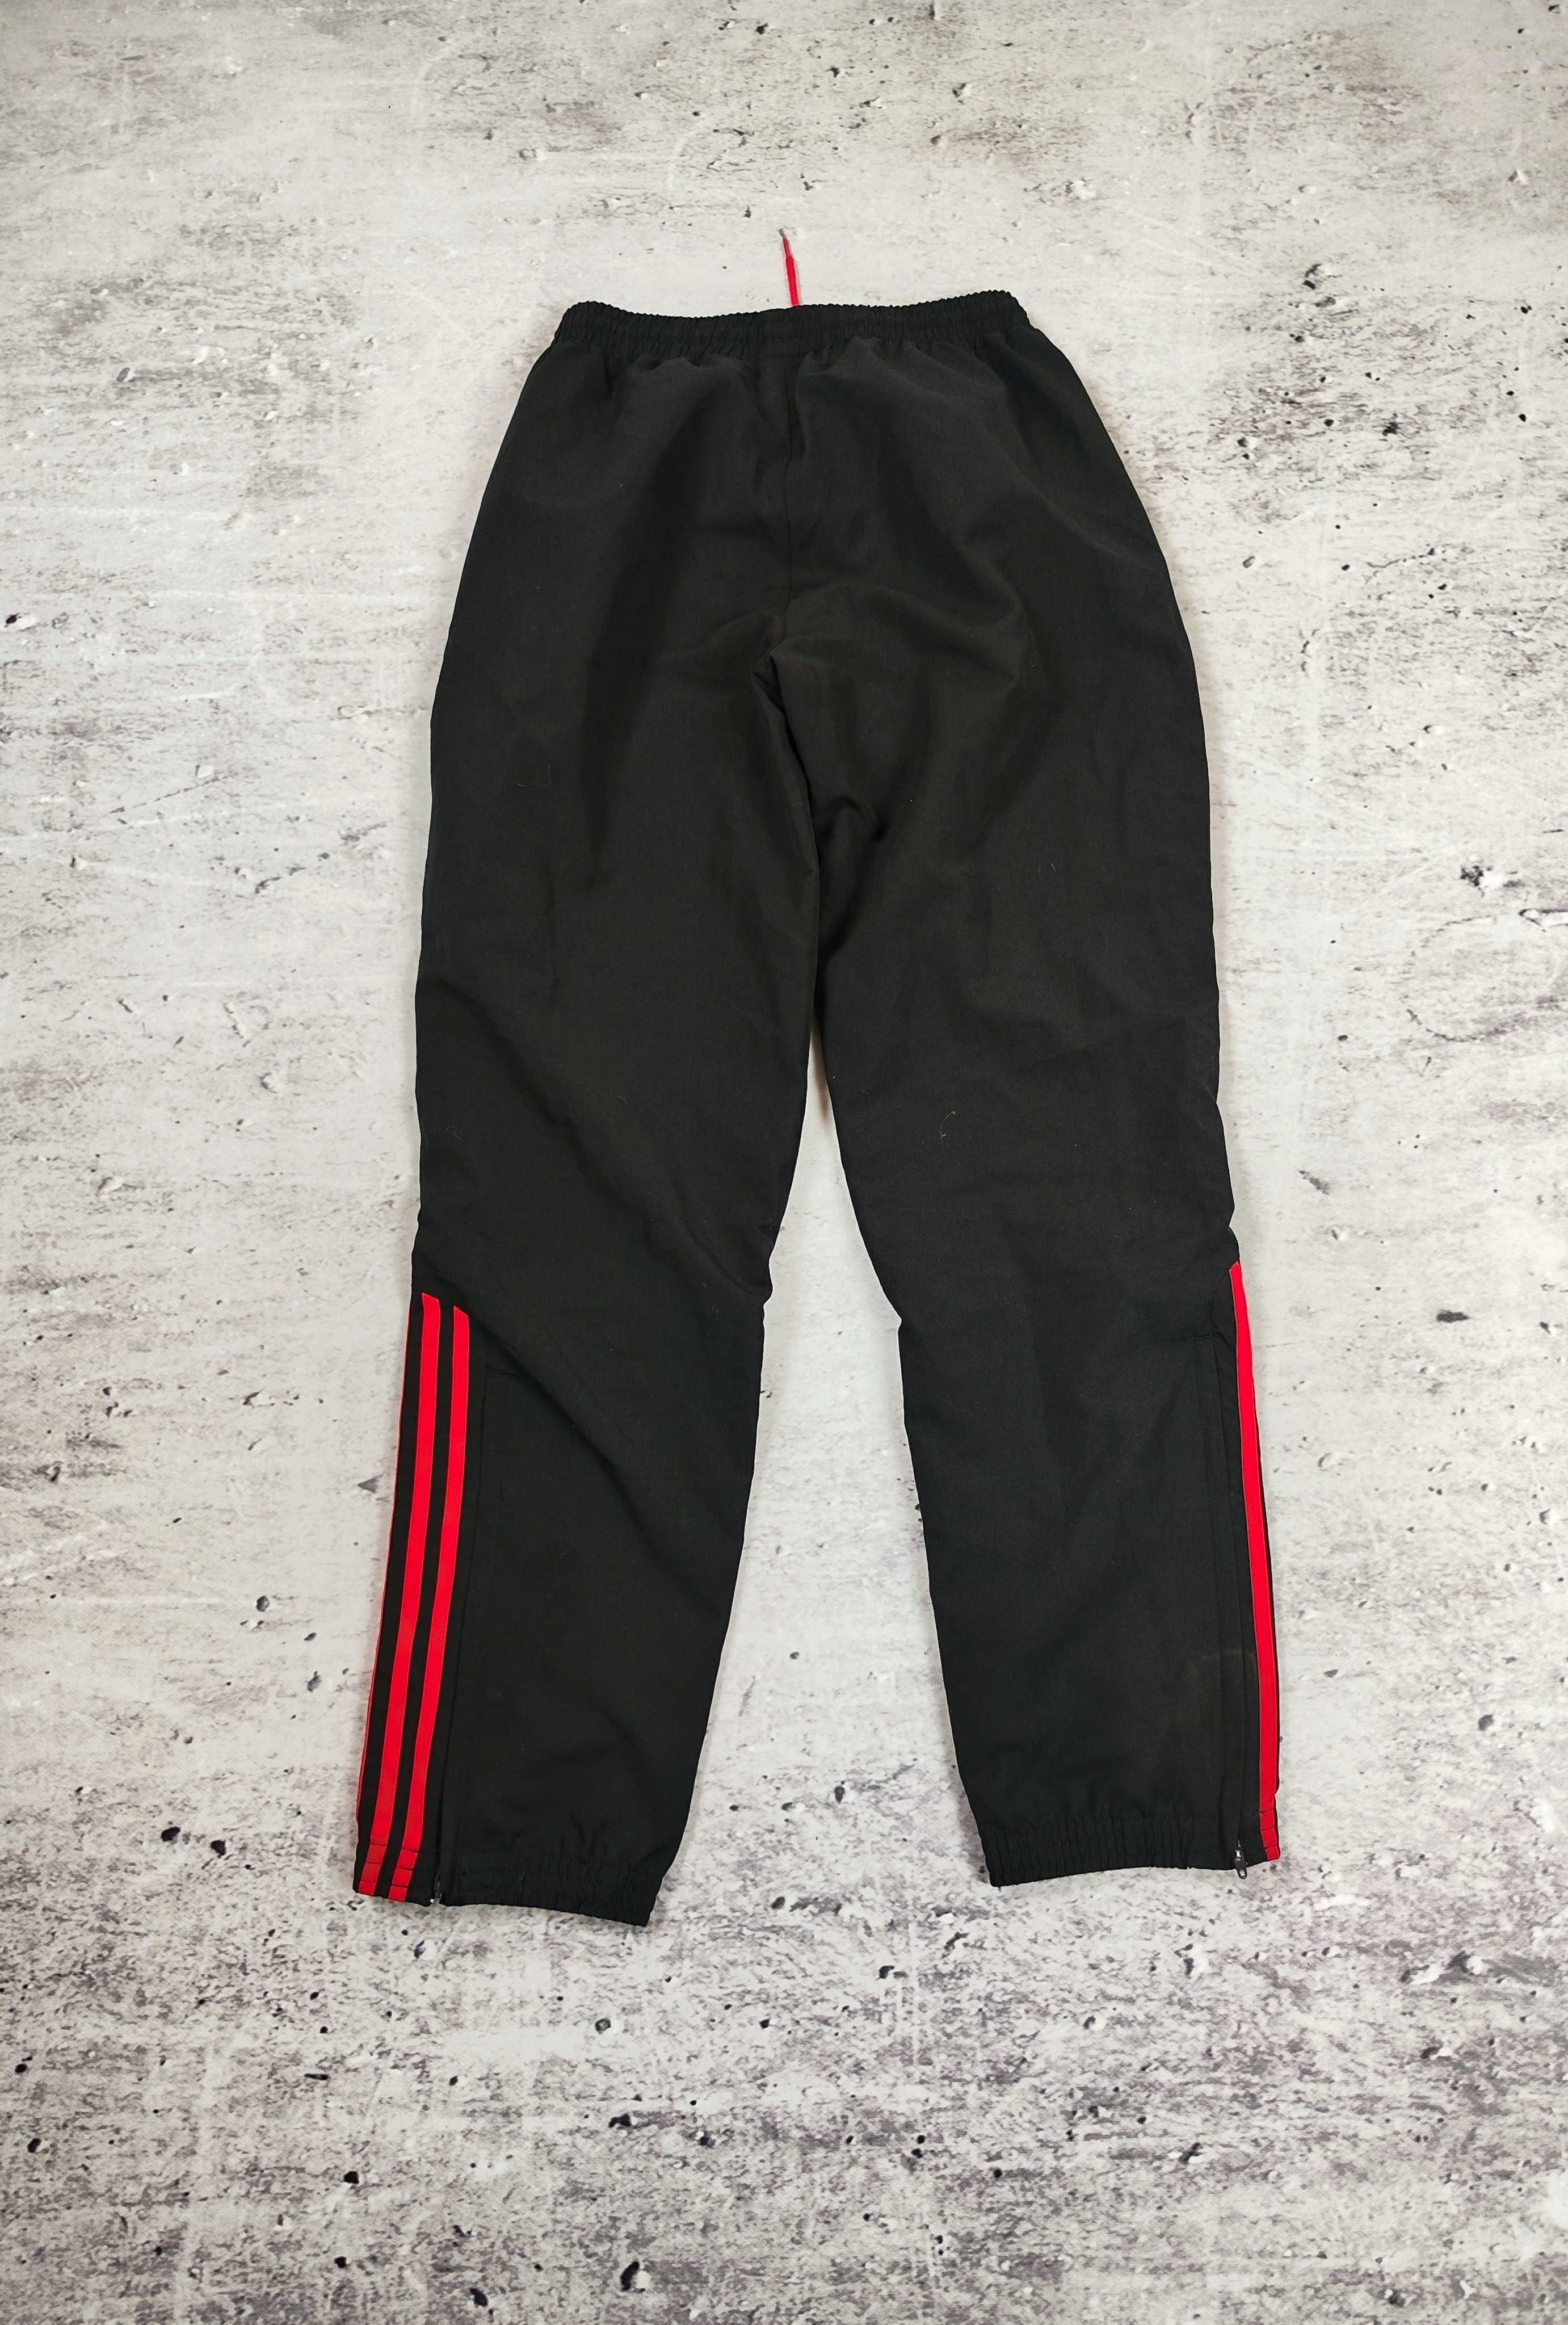 Spodnie dresowe Adidas czarne dresy streetwear 90s r. M